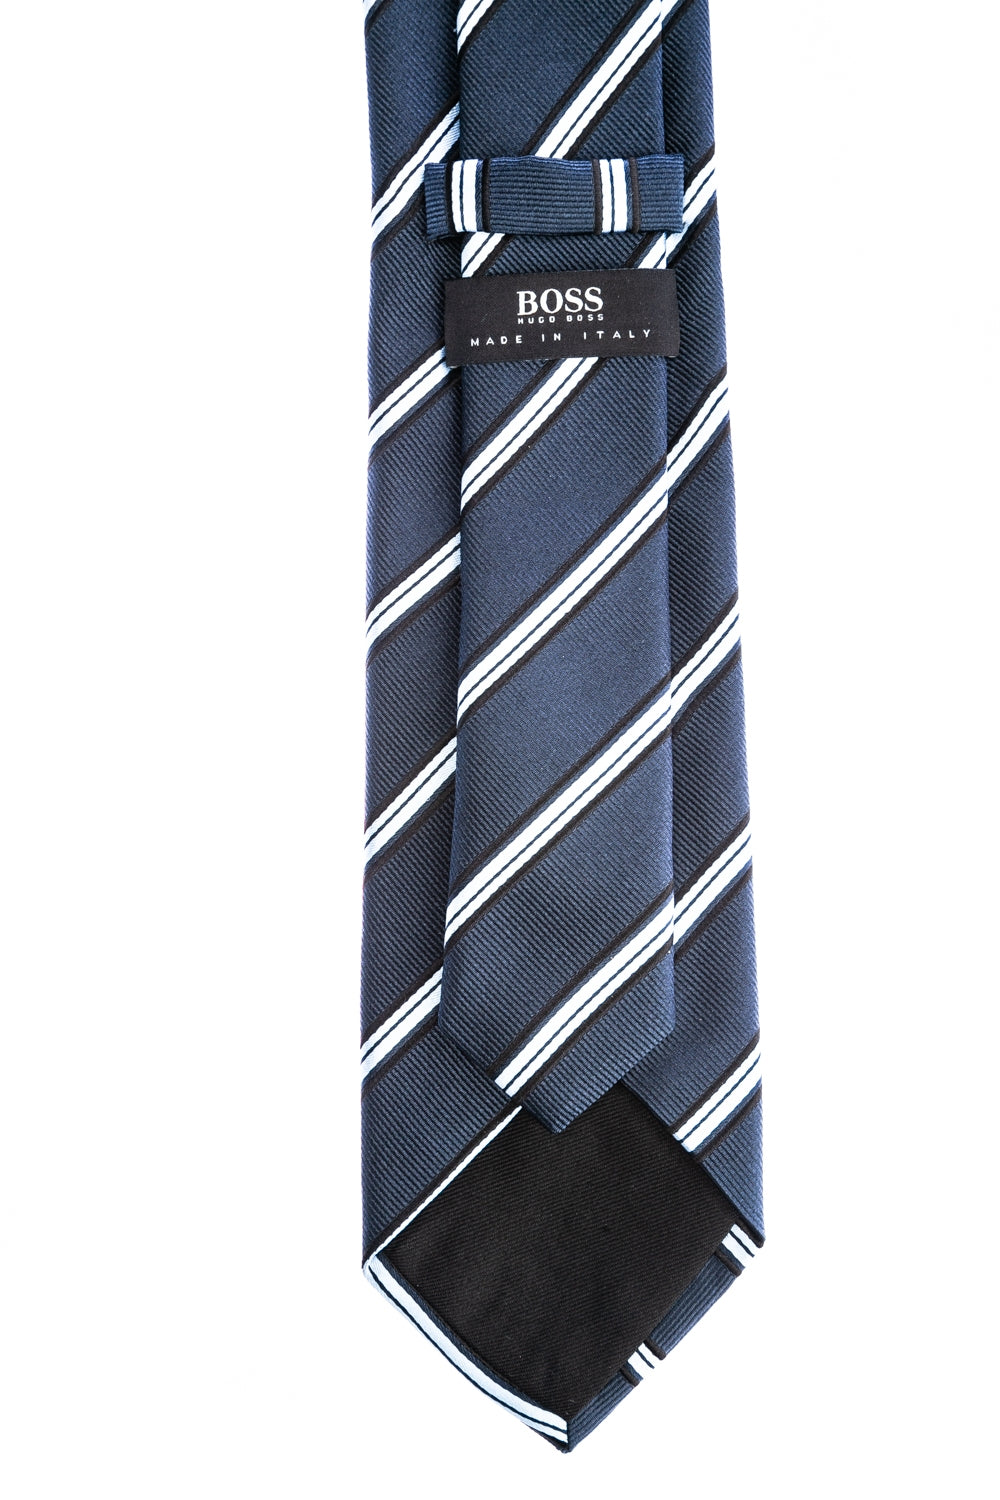 BOSS 7.5cm Tie in Navy Stripe